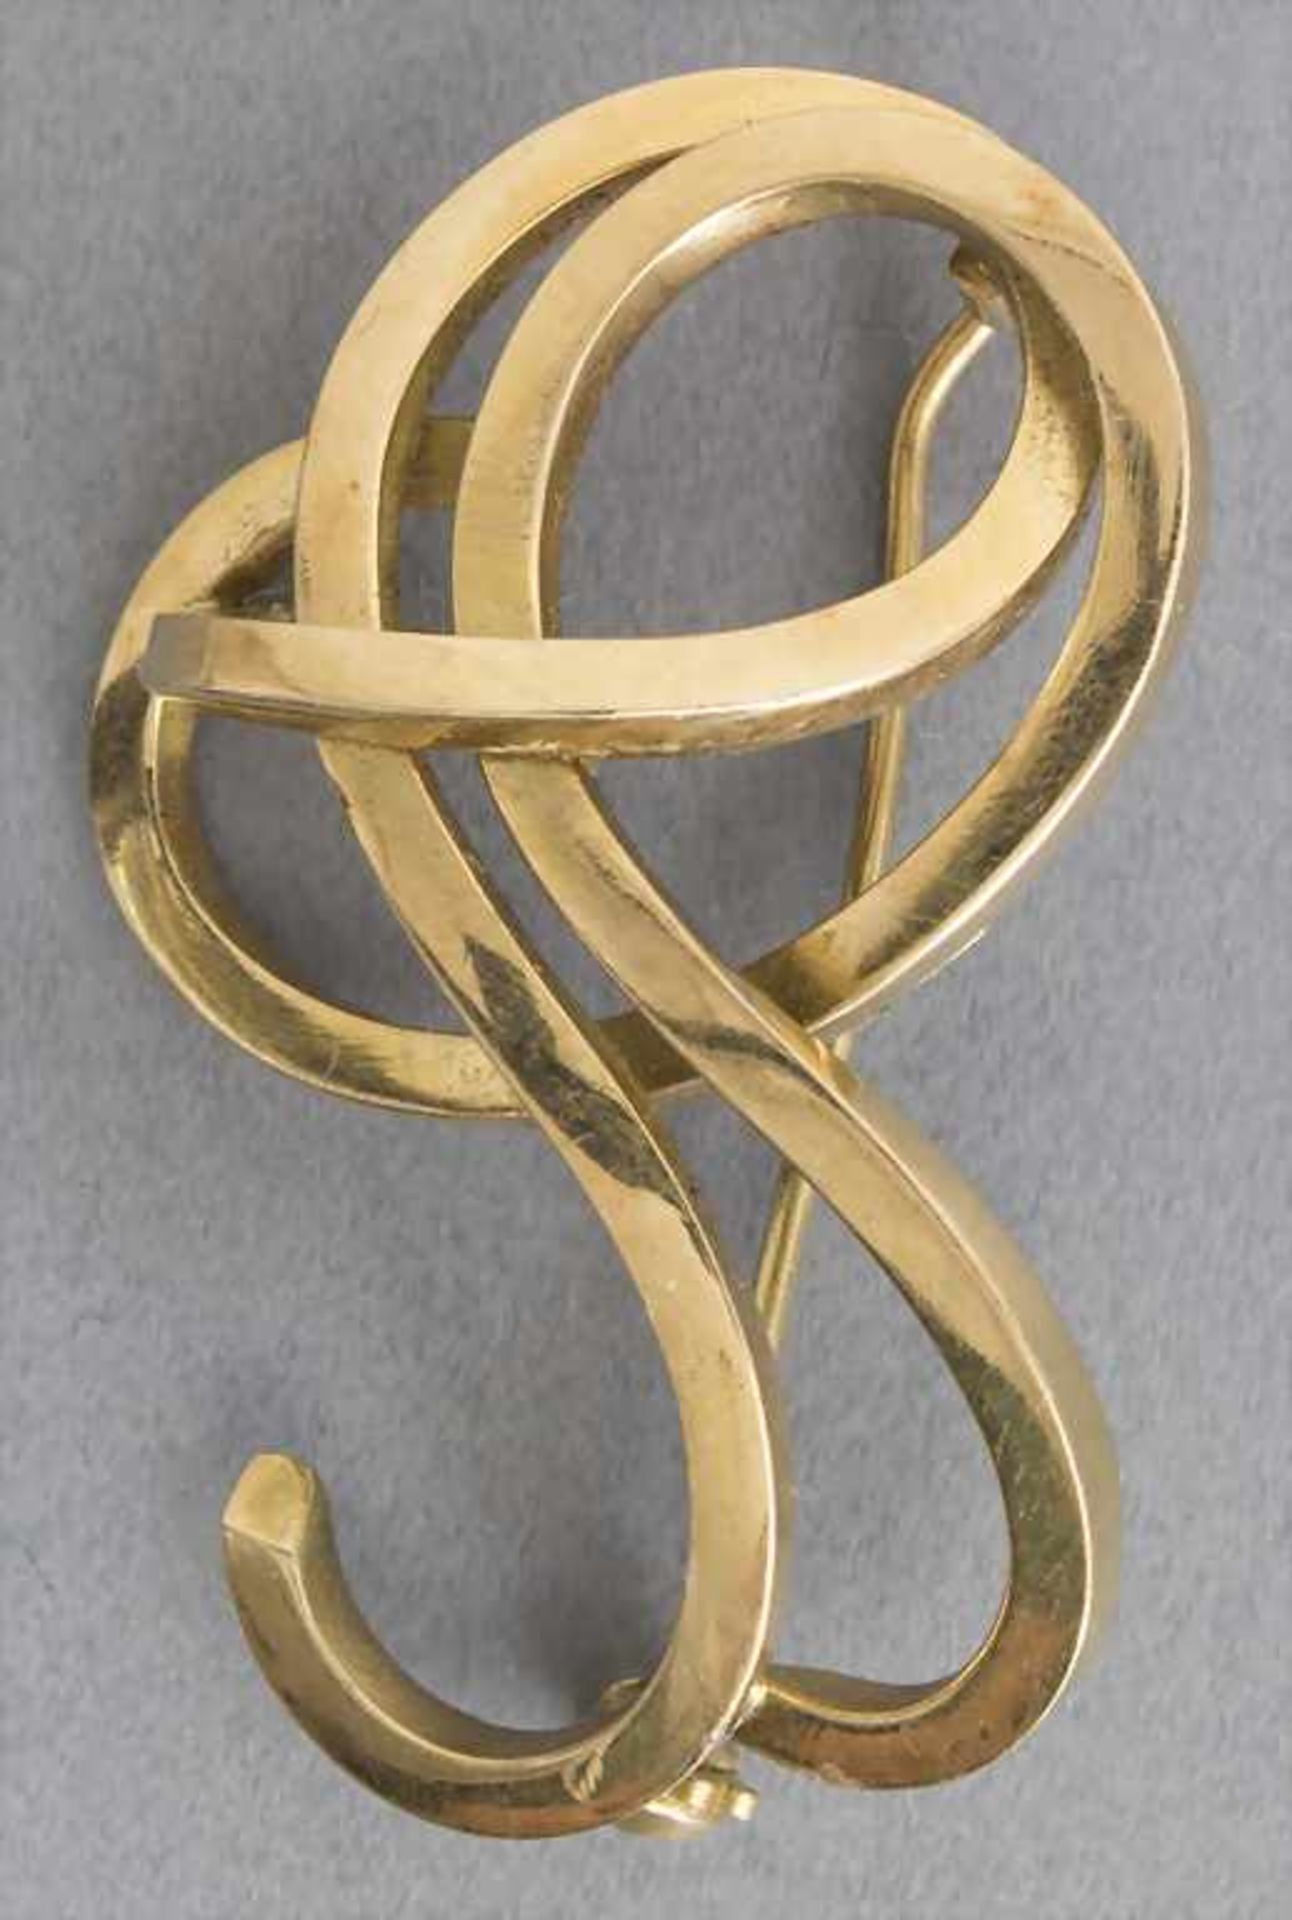 Gold-Brosche / An brooch in goldMaterial: Gelbgold Au 585/000 14 Kt, gestempelt,Punzierung: '585',